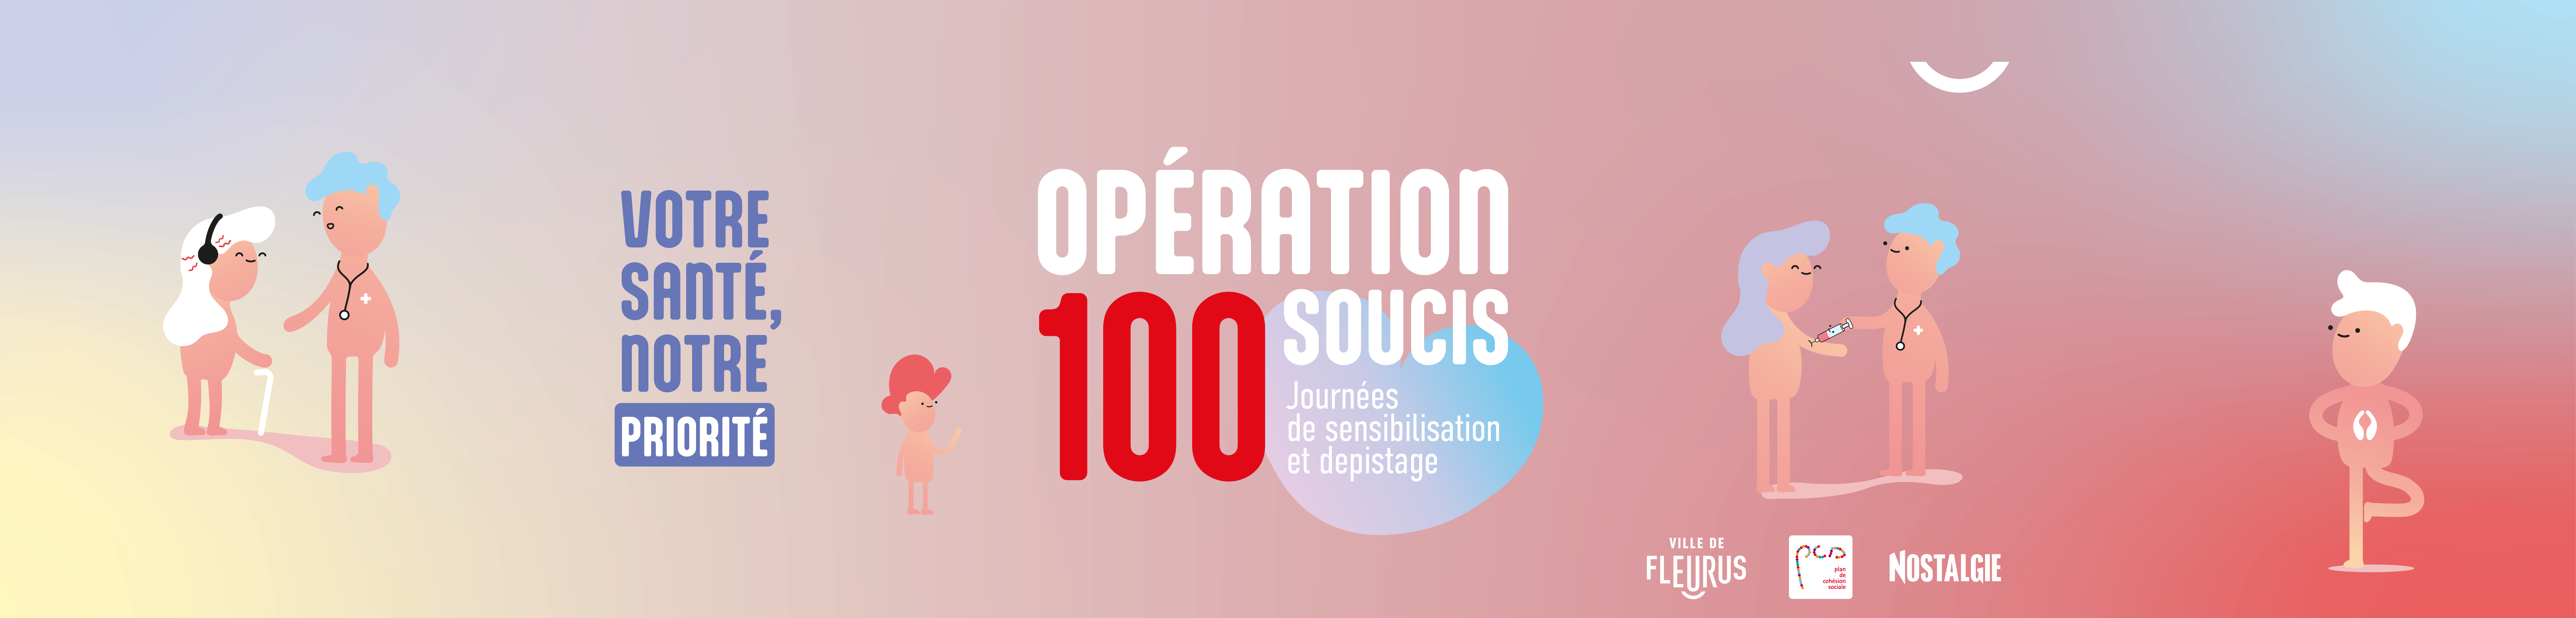 Opération 100 soucis